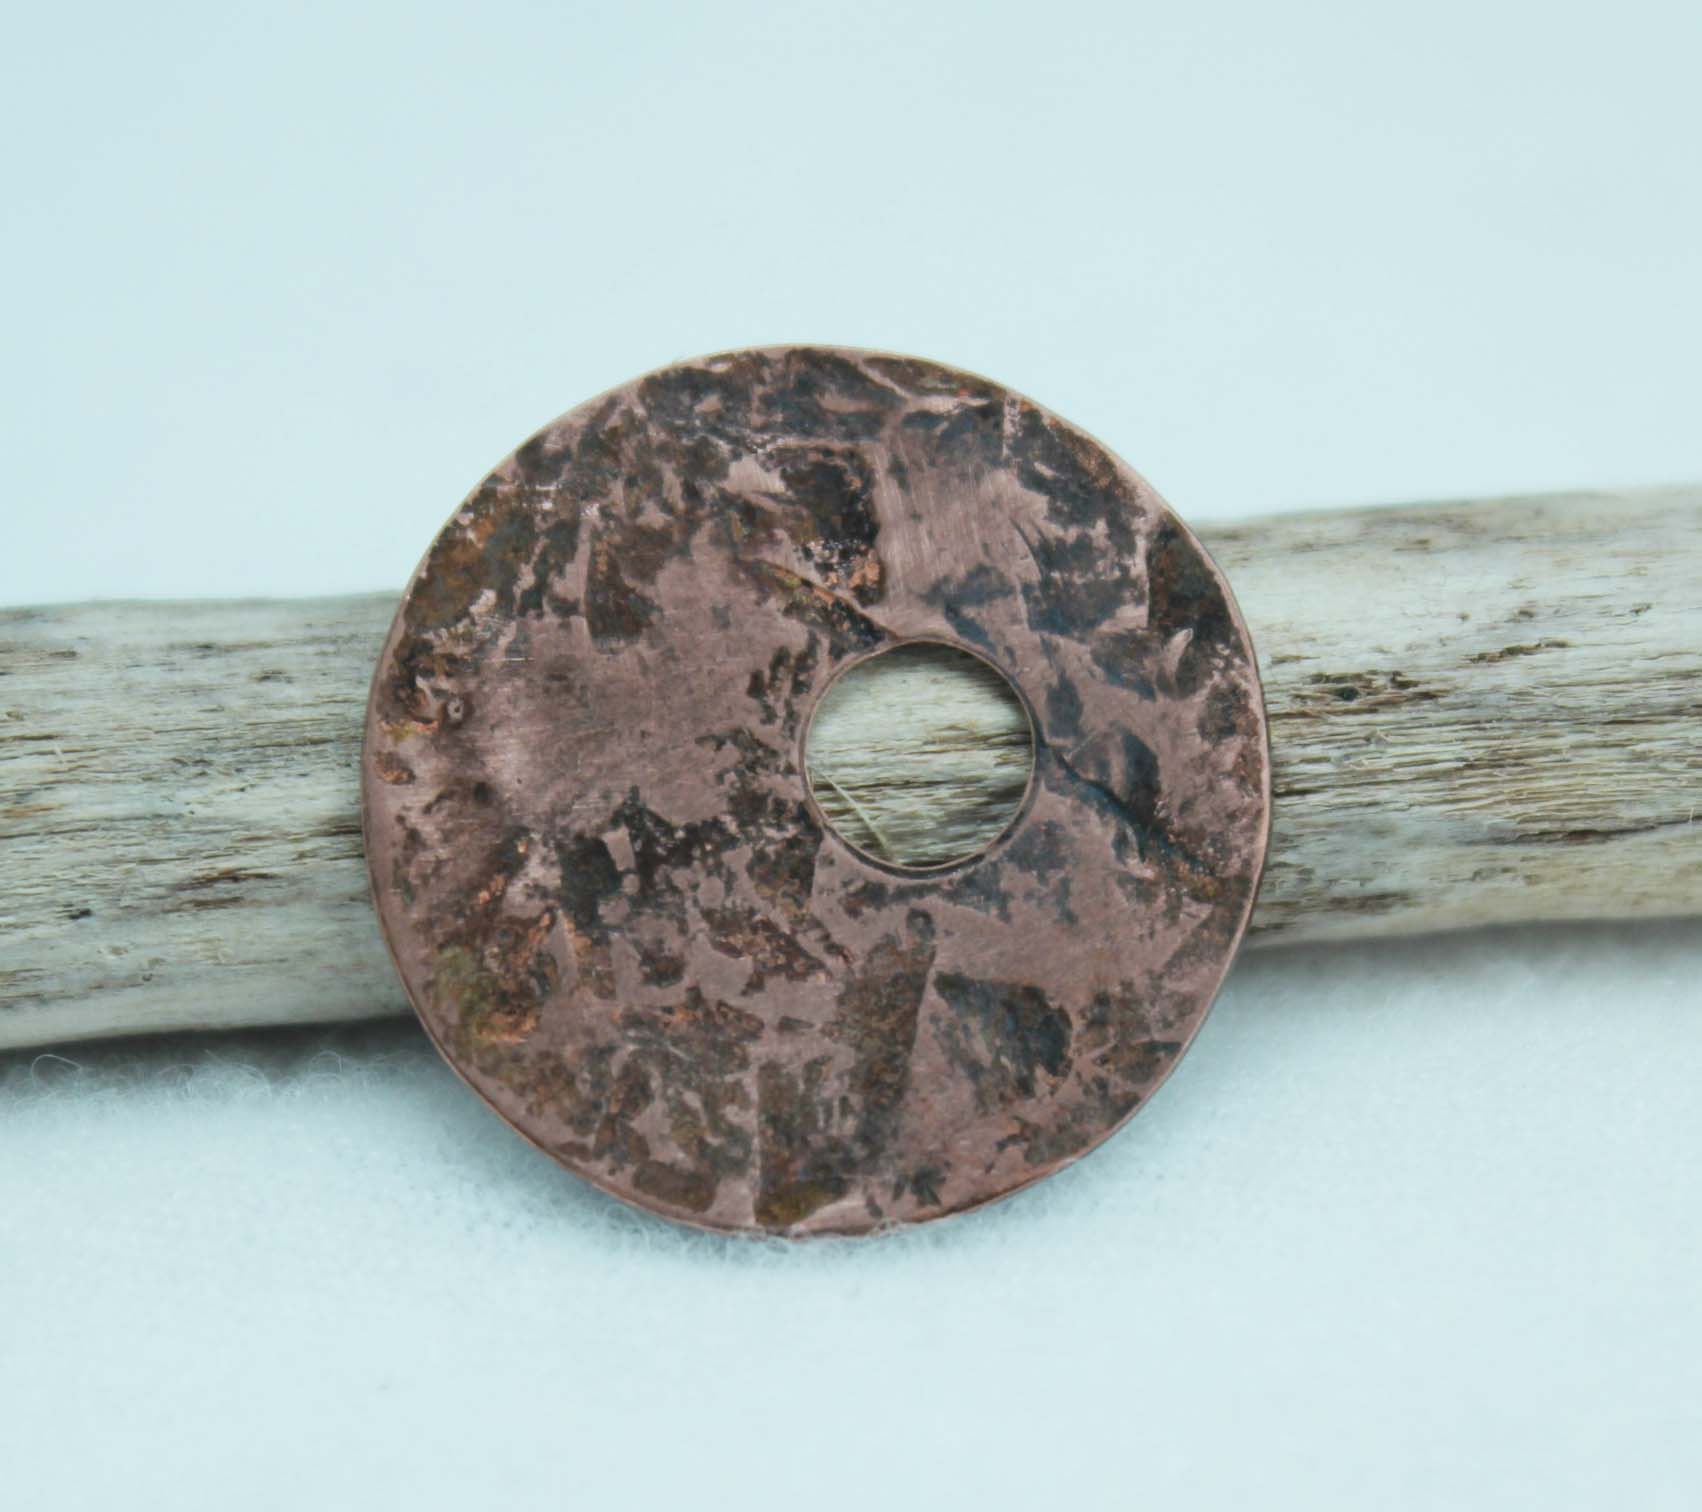 Copper disc textured using a brass hammer